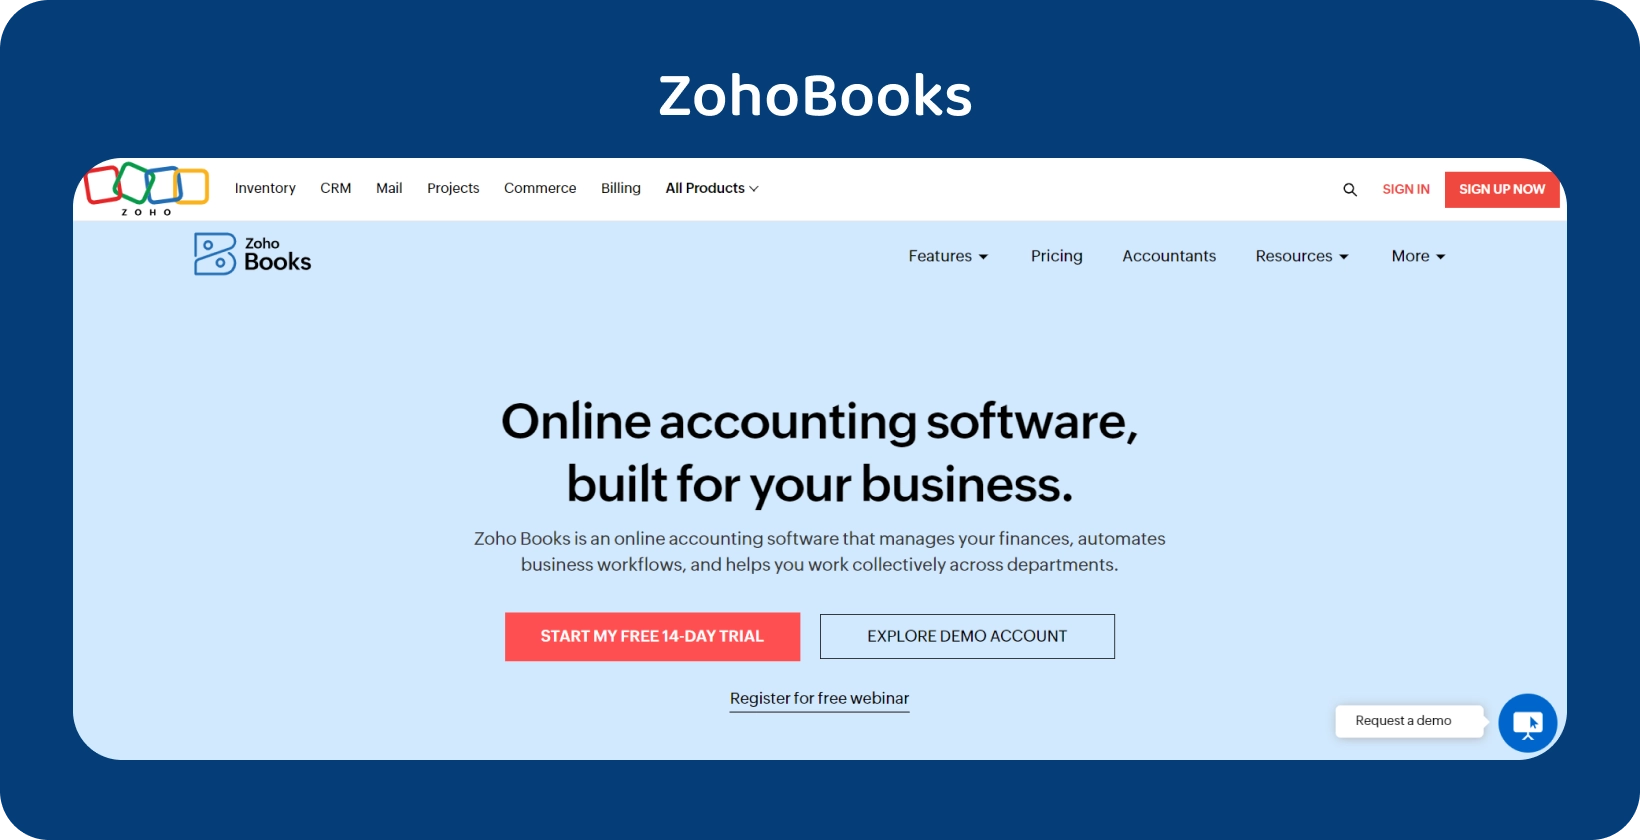 يسلط شعار الصفحة الرئيسية Zoho Books الضوء على برنامج المحاسبة عبر الإنترنت المصمم خصيصا للأعمال من أجل تبسيط العمليات